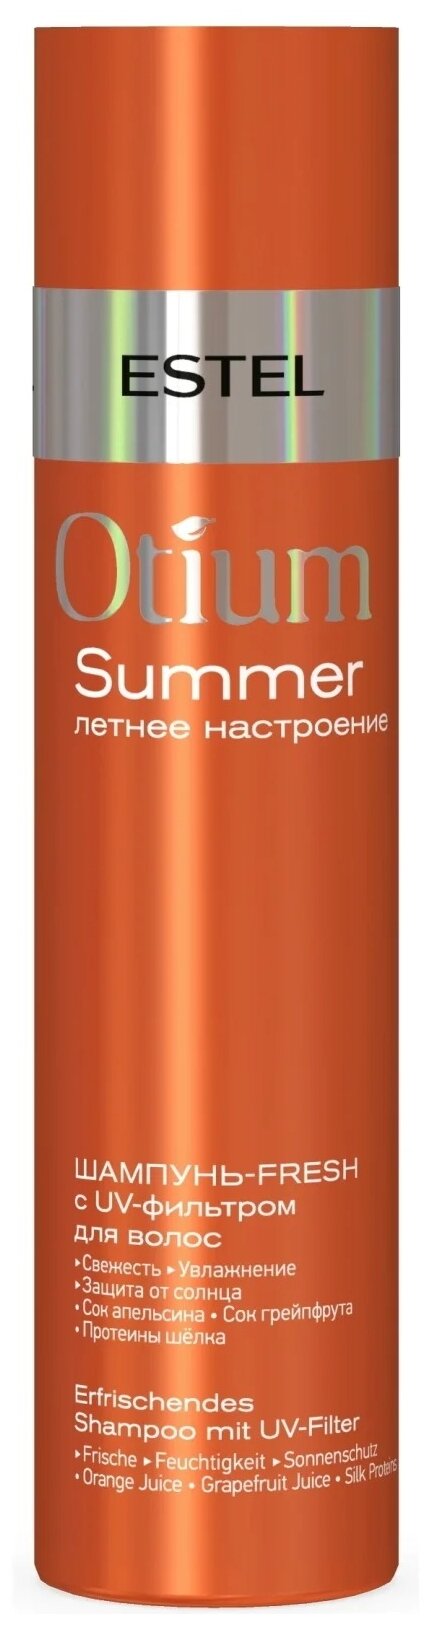 Estel Шампунь-fresh с UV-фильтром для волос, 250 мл (Estel, ) - фото №1